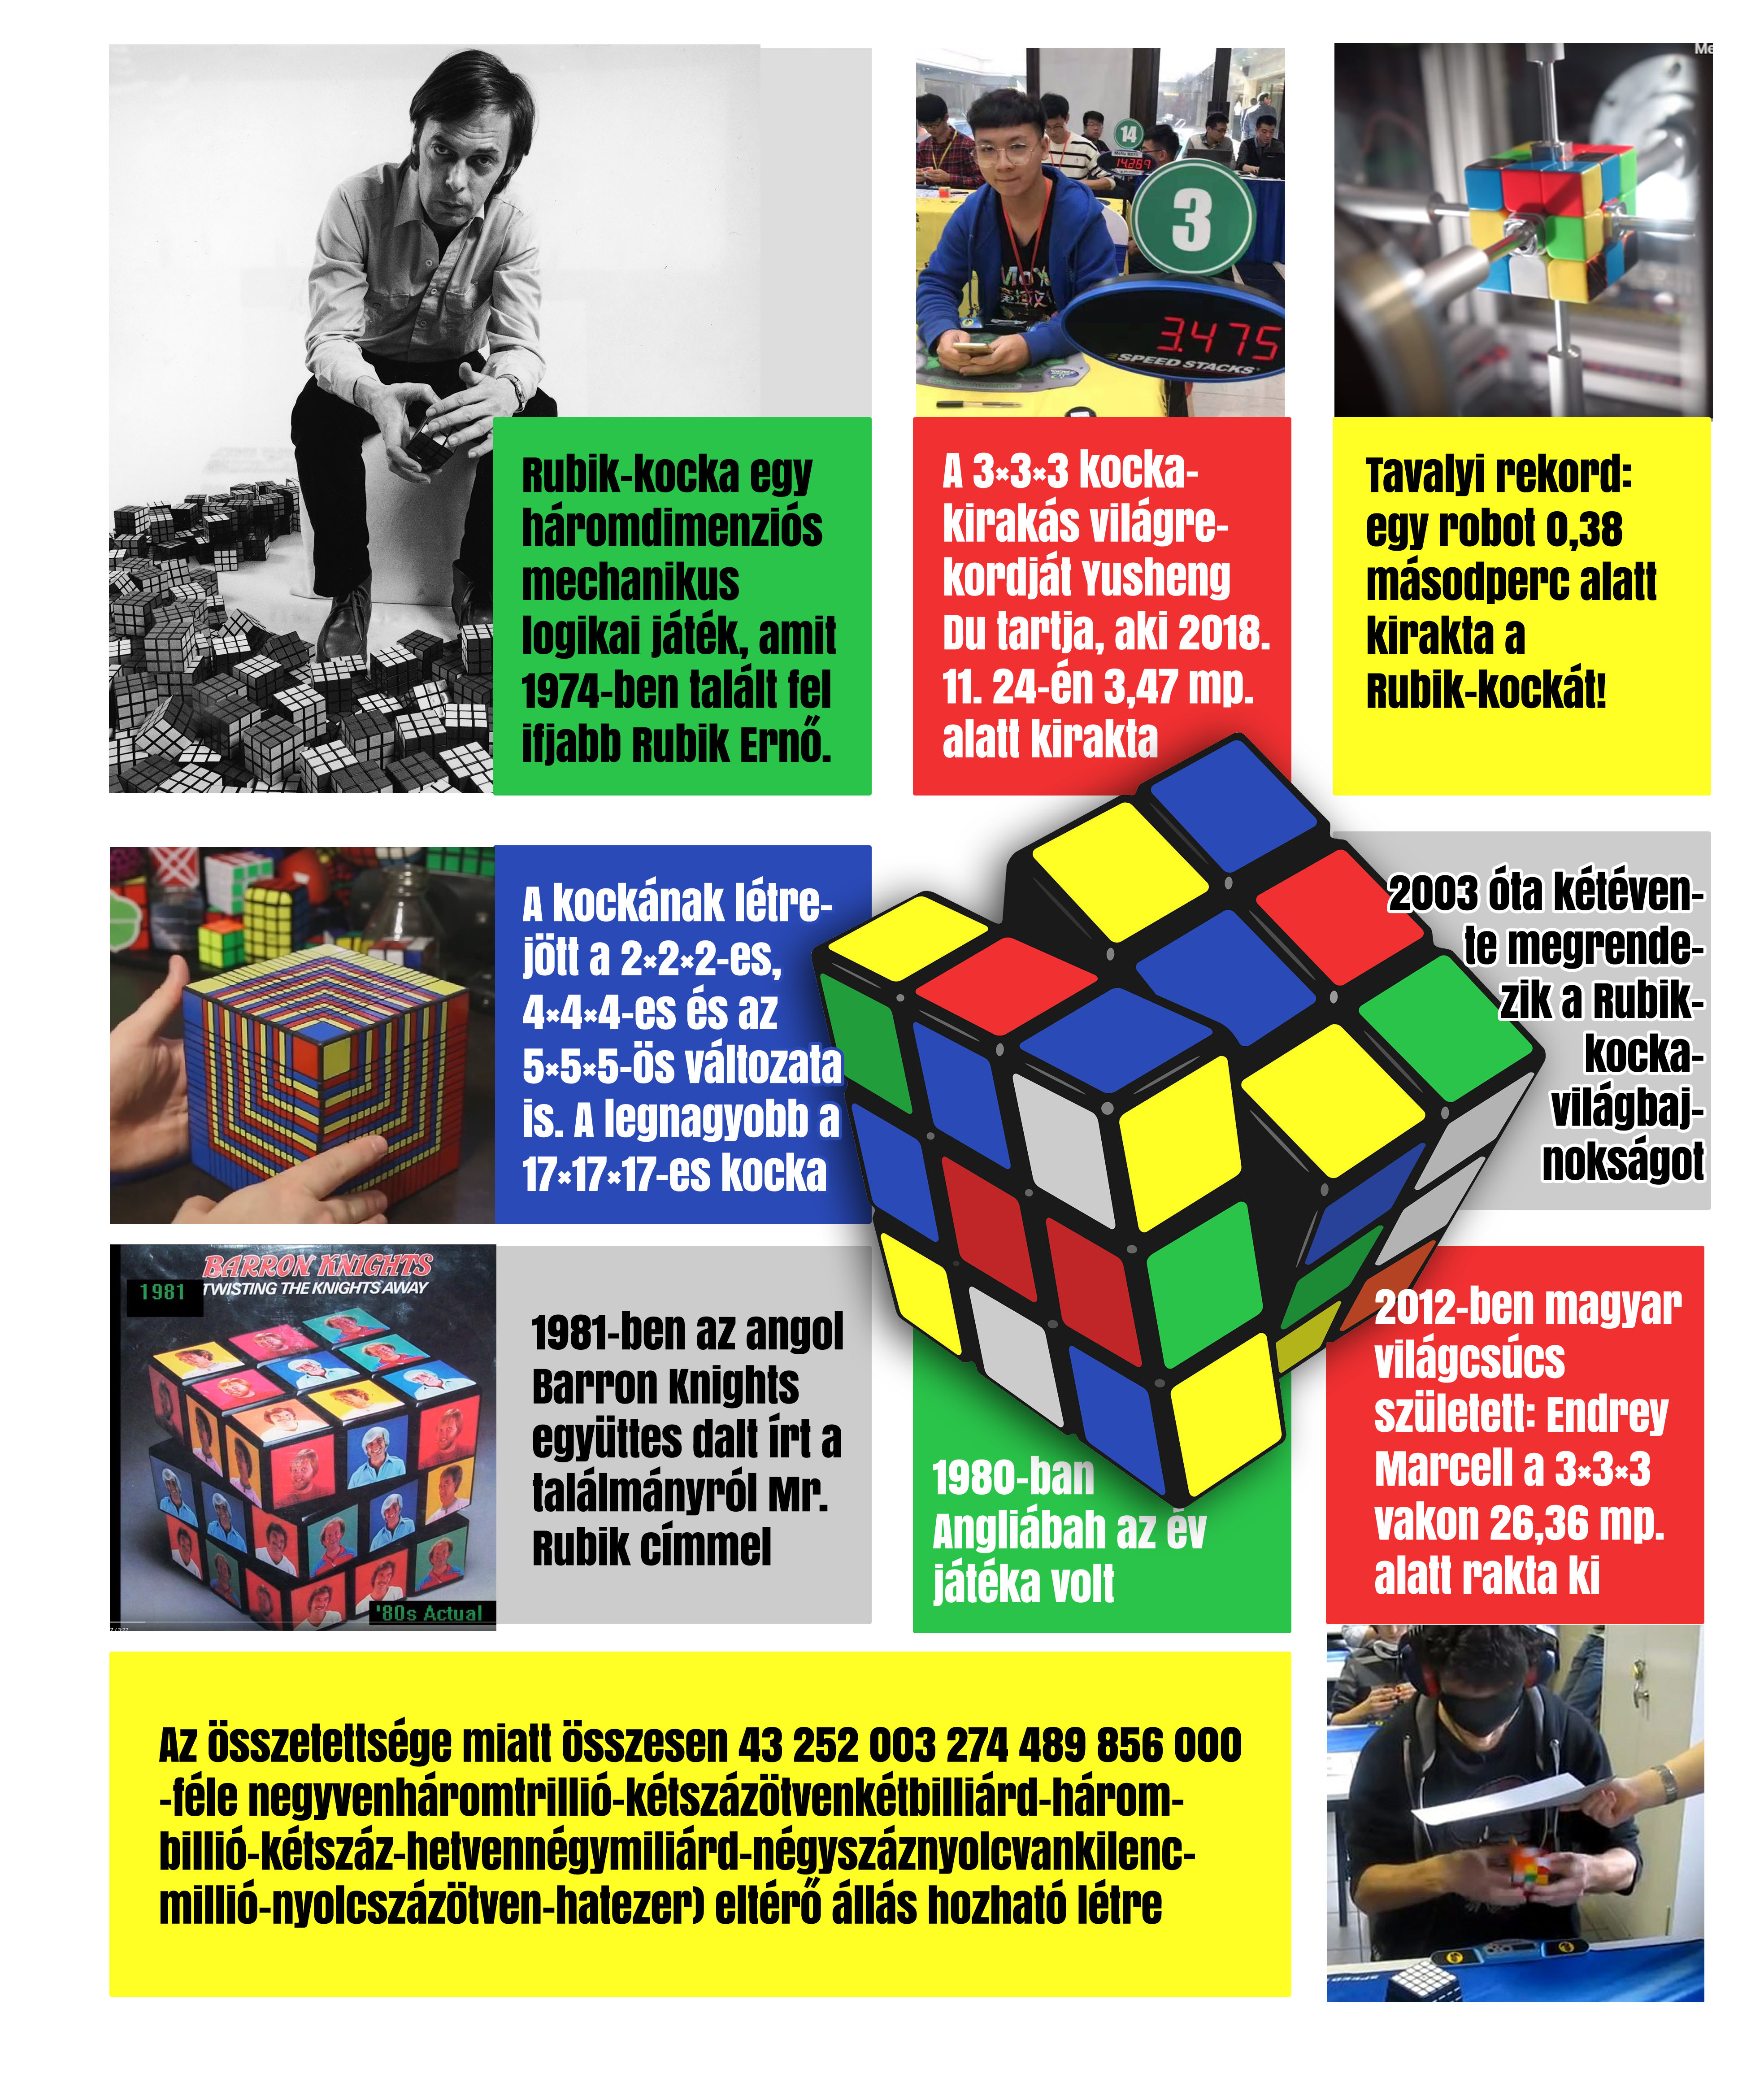 Szabad préda lett a Rubik-kocka, ám az ügy mégis bonyolultabb, mint  gondolnánk - Blikk